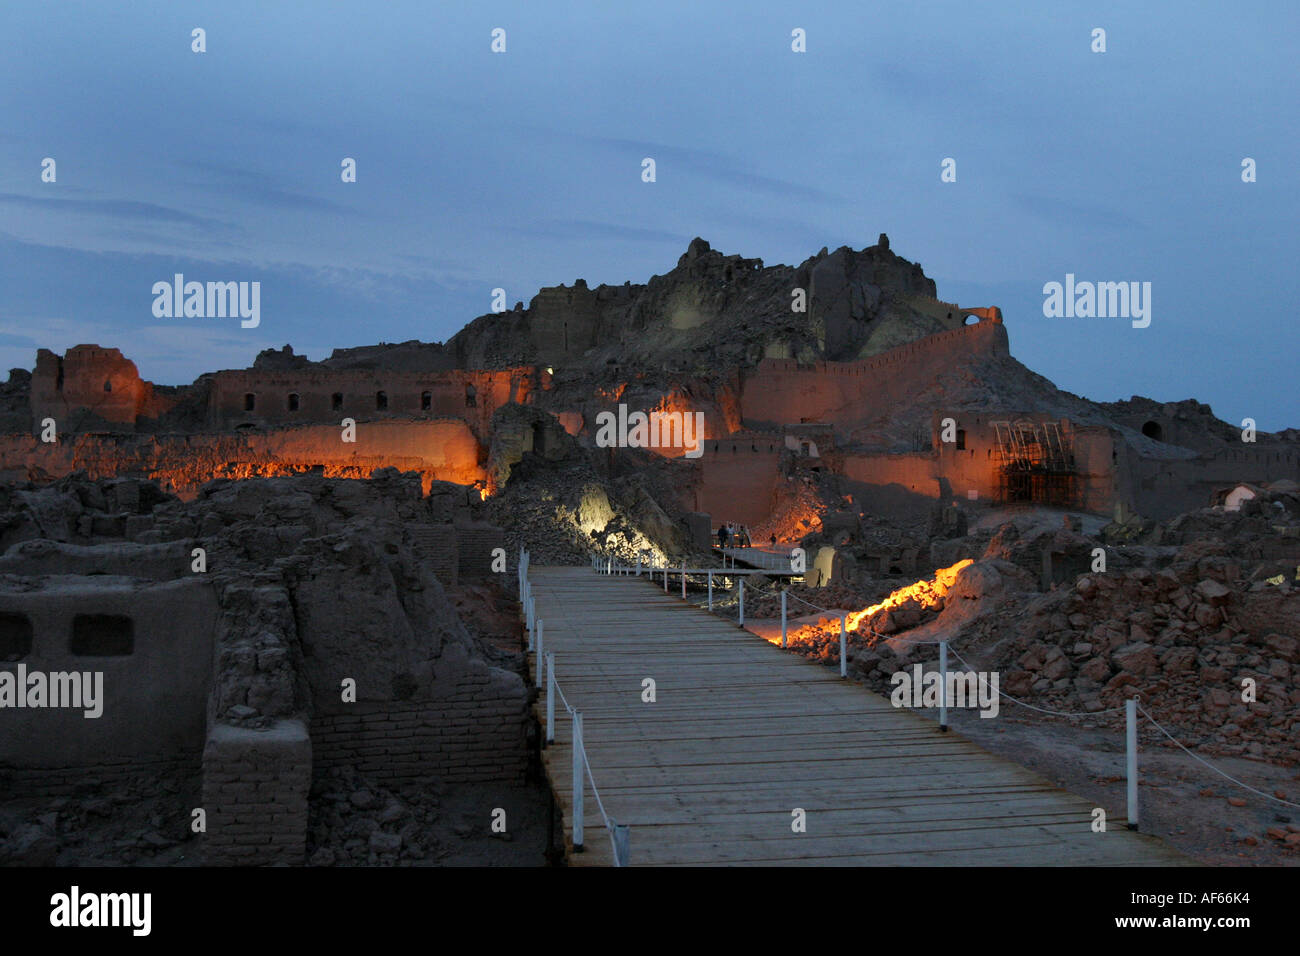 Vista de la antigua ciudadela (Arg e Bam) por la noche en Bam, un año después del terremoto que destruyó la ciudad entera, Irán, 20 de noviembre Foto de stock